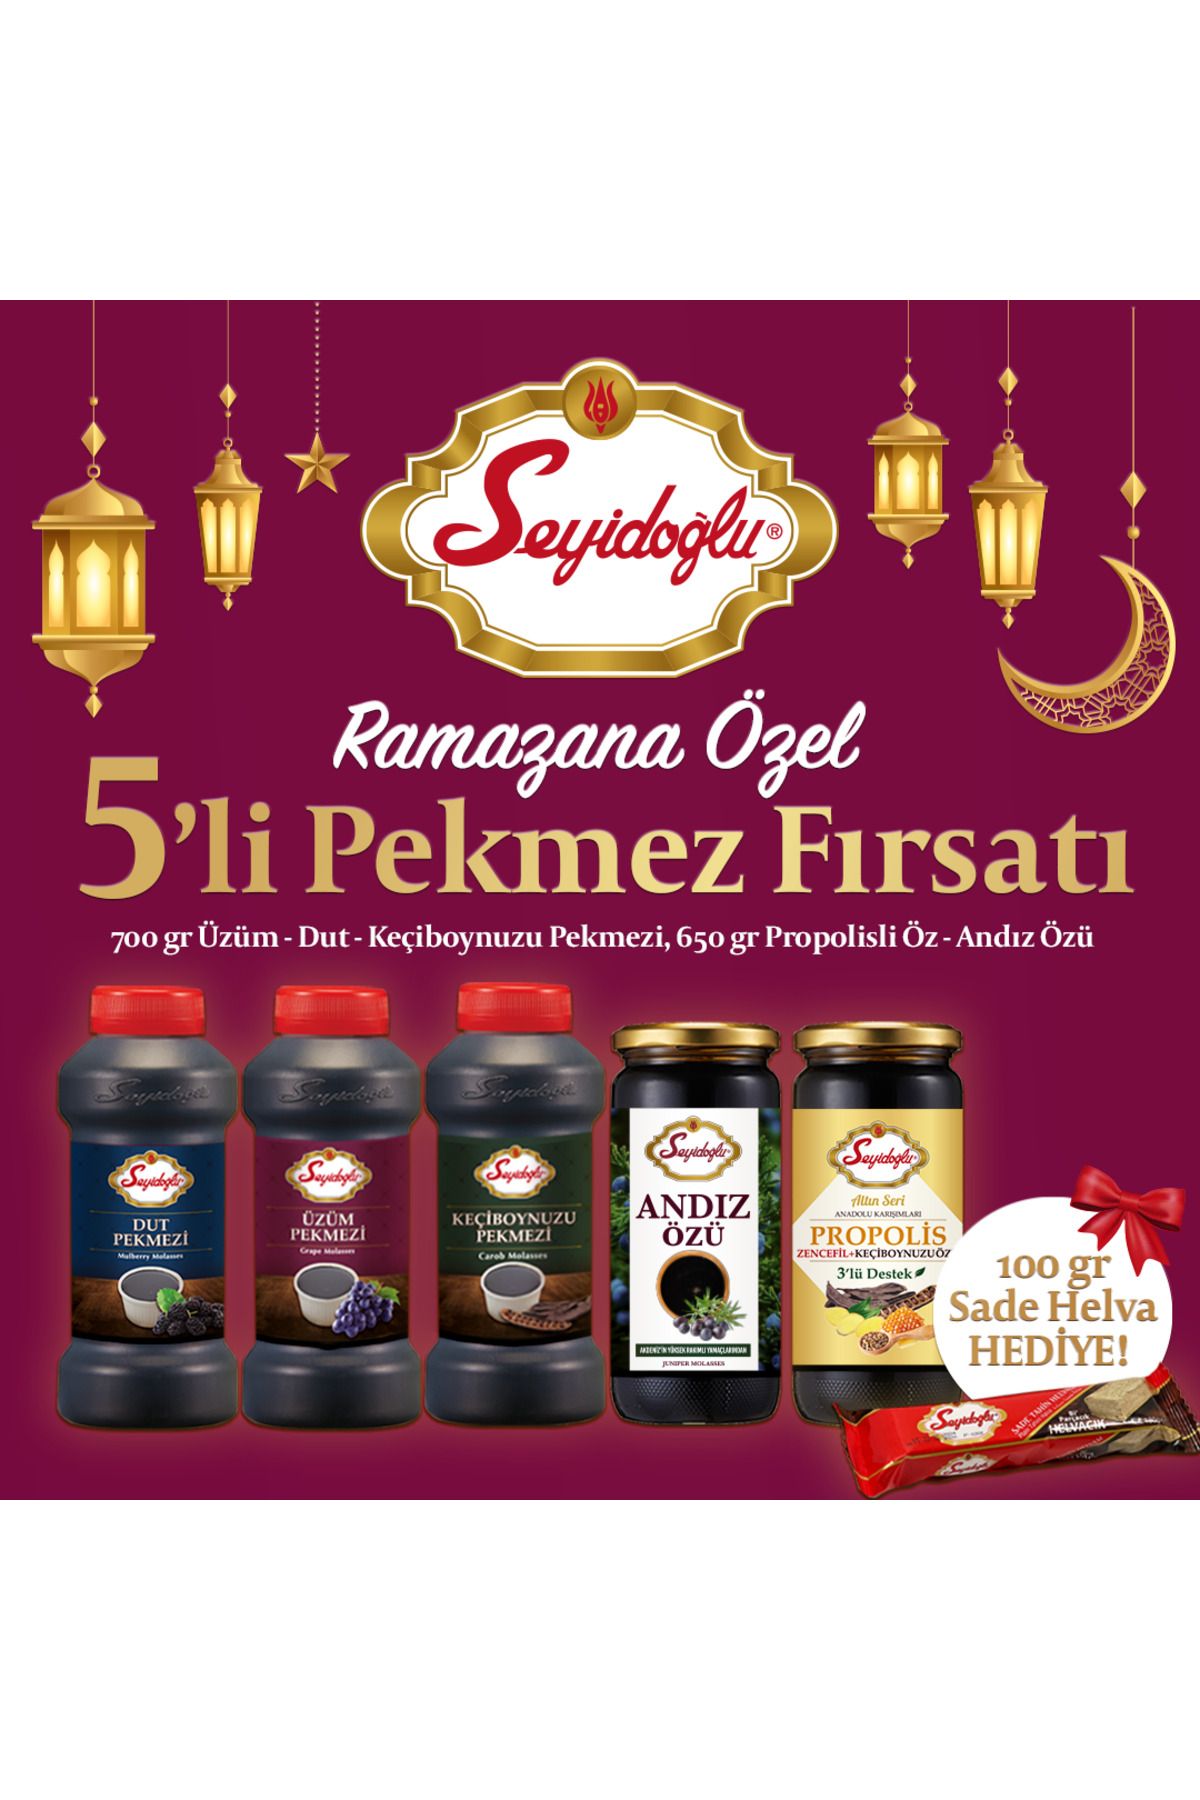 Seyidoğlu Ramazan Pekmez Şifa Paketi